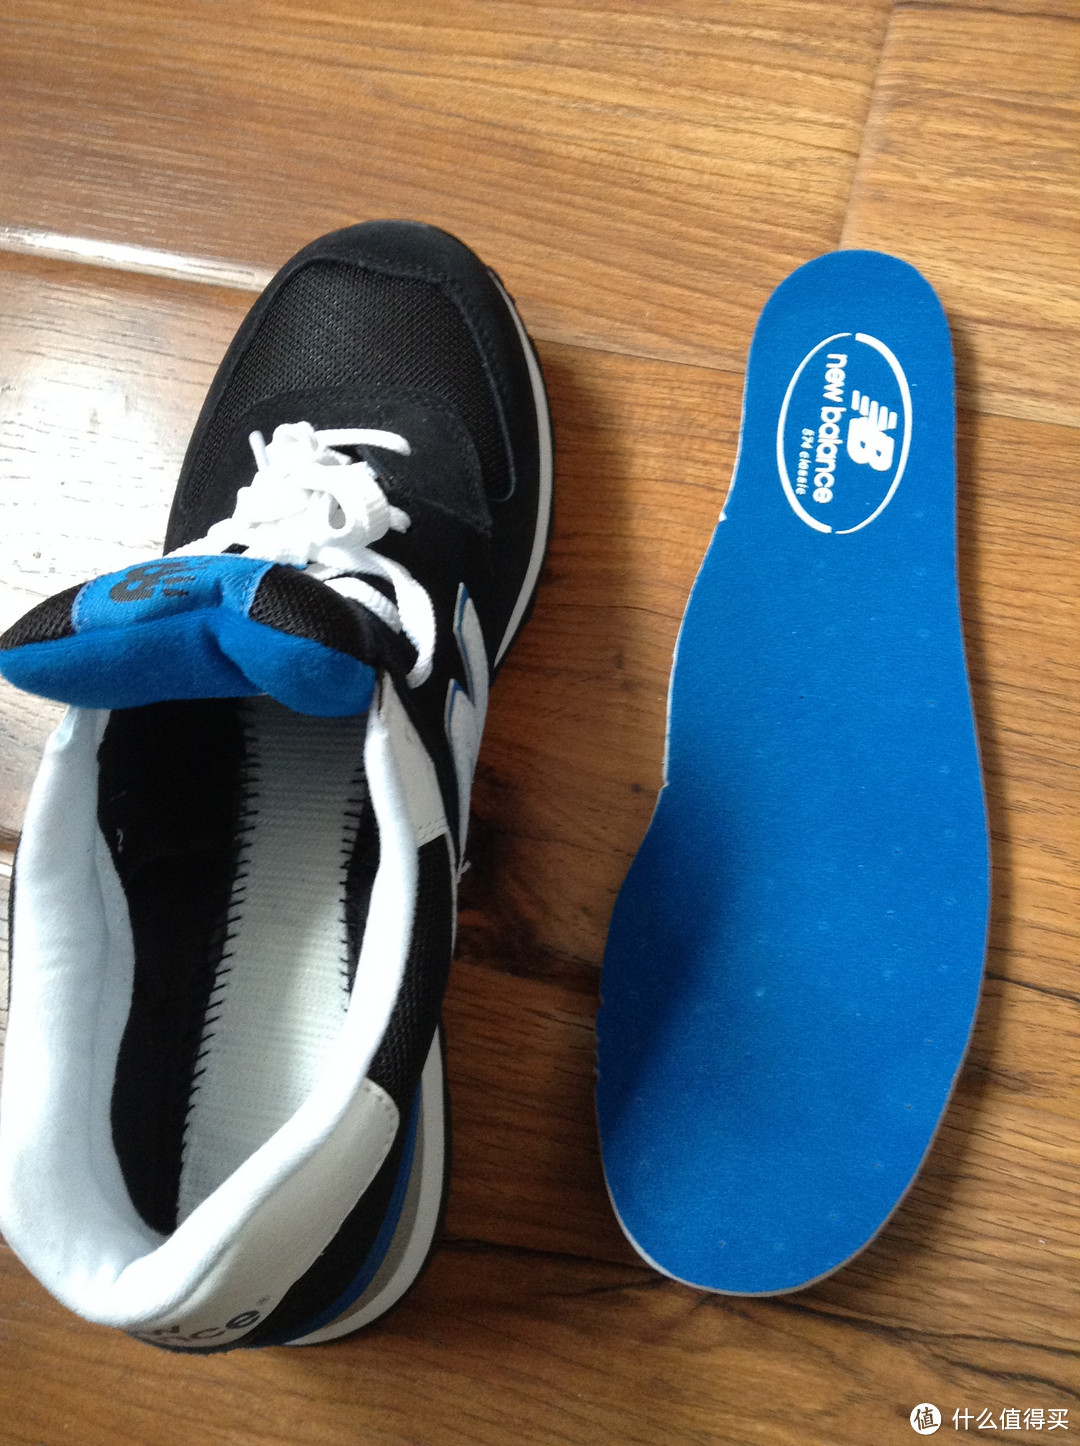 成熟与运动：Rockport 乐步 Ellingwood 男款商务正装鞋 + New Balance 新百伦 ML574 休闲运动鞋